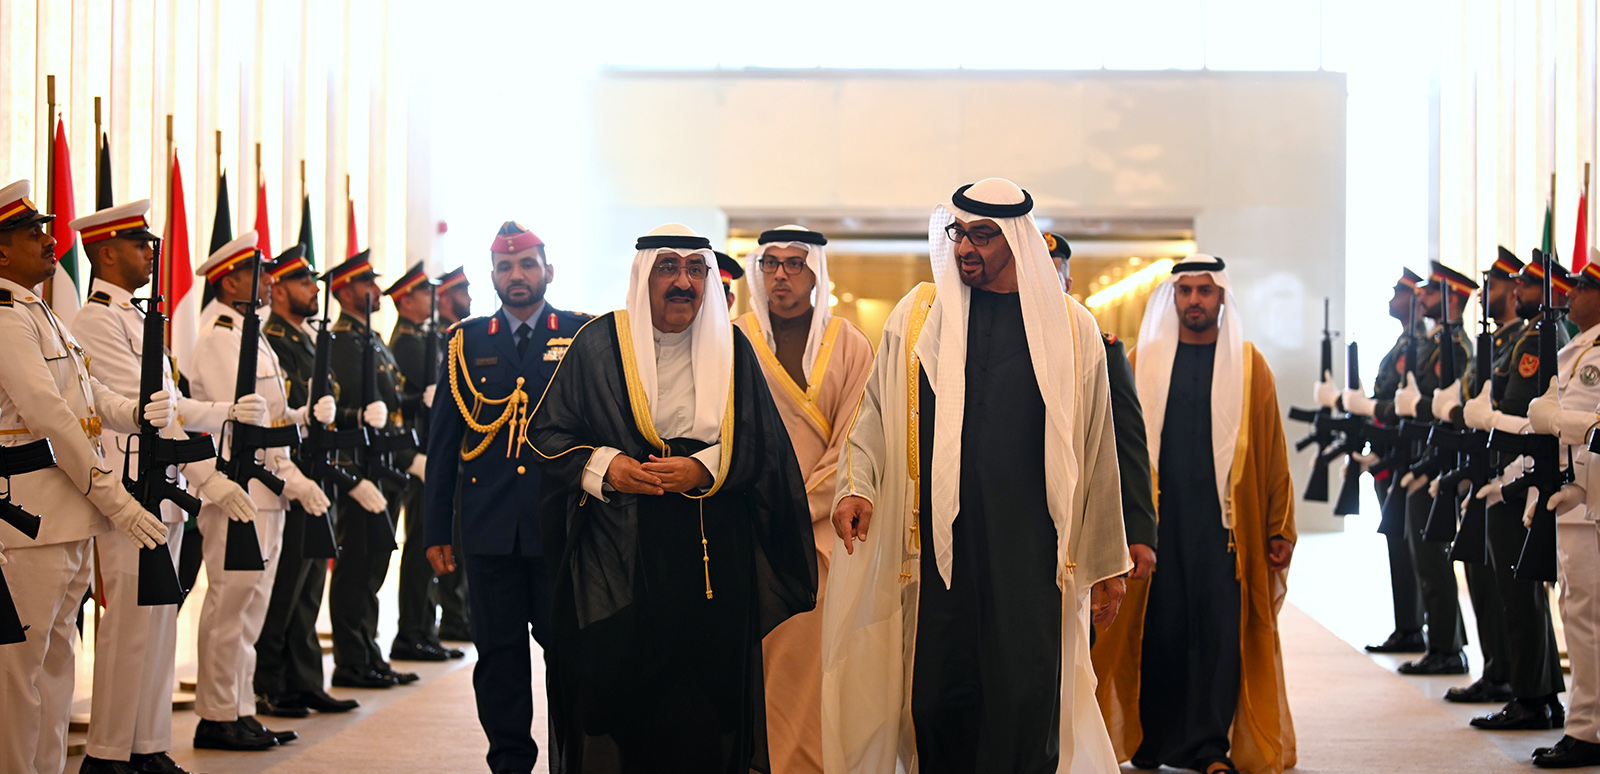 HH the Amir Sheikh Mishal Al-Ahmad Al-Jaber Al-Sabah arrived in Abu Dhabi and was received by UAE President Sheikh Mohammad bin Zayed Al-Nahyan.